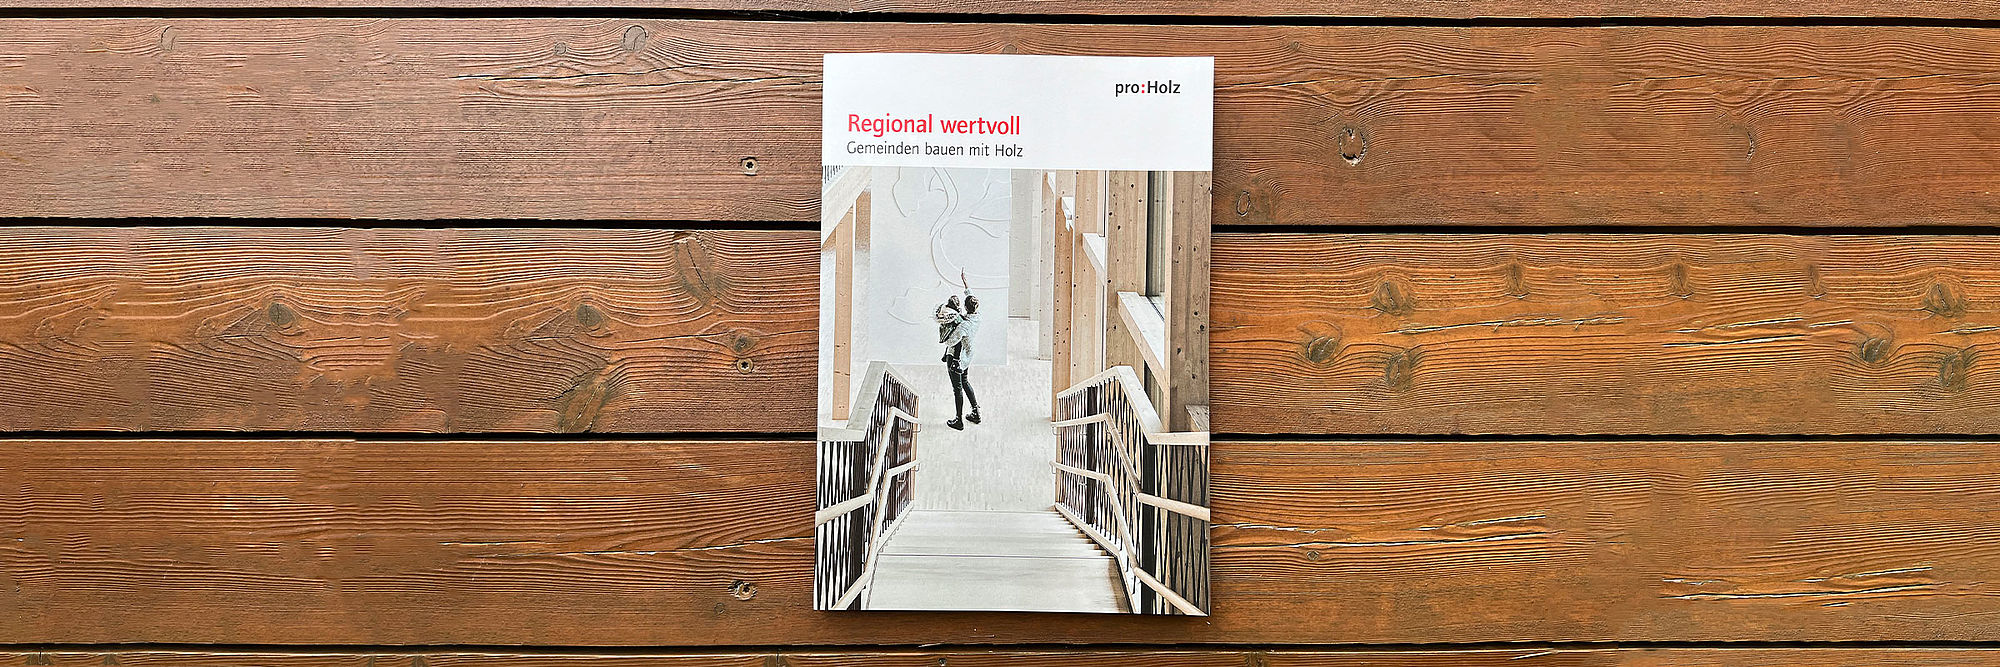 Foto der Broschüre "Regional wertcoll. Gemeinden bauen mit Holz"